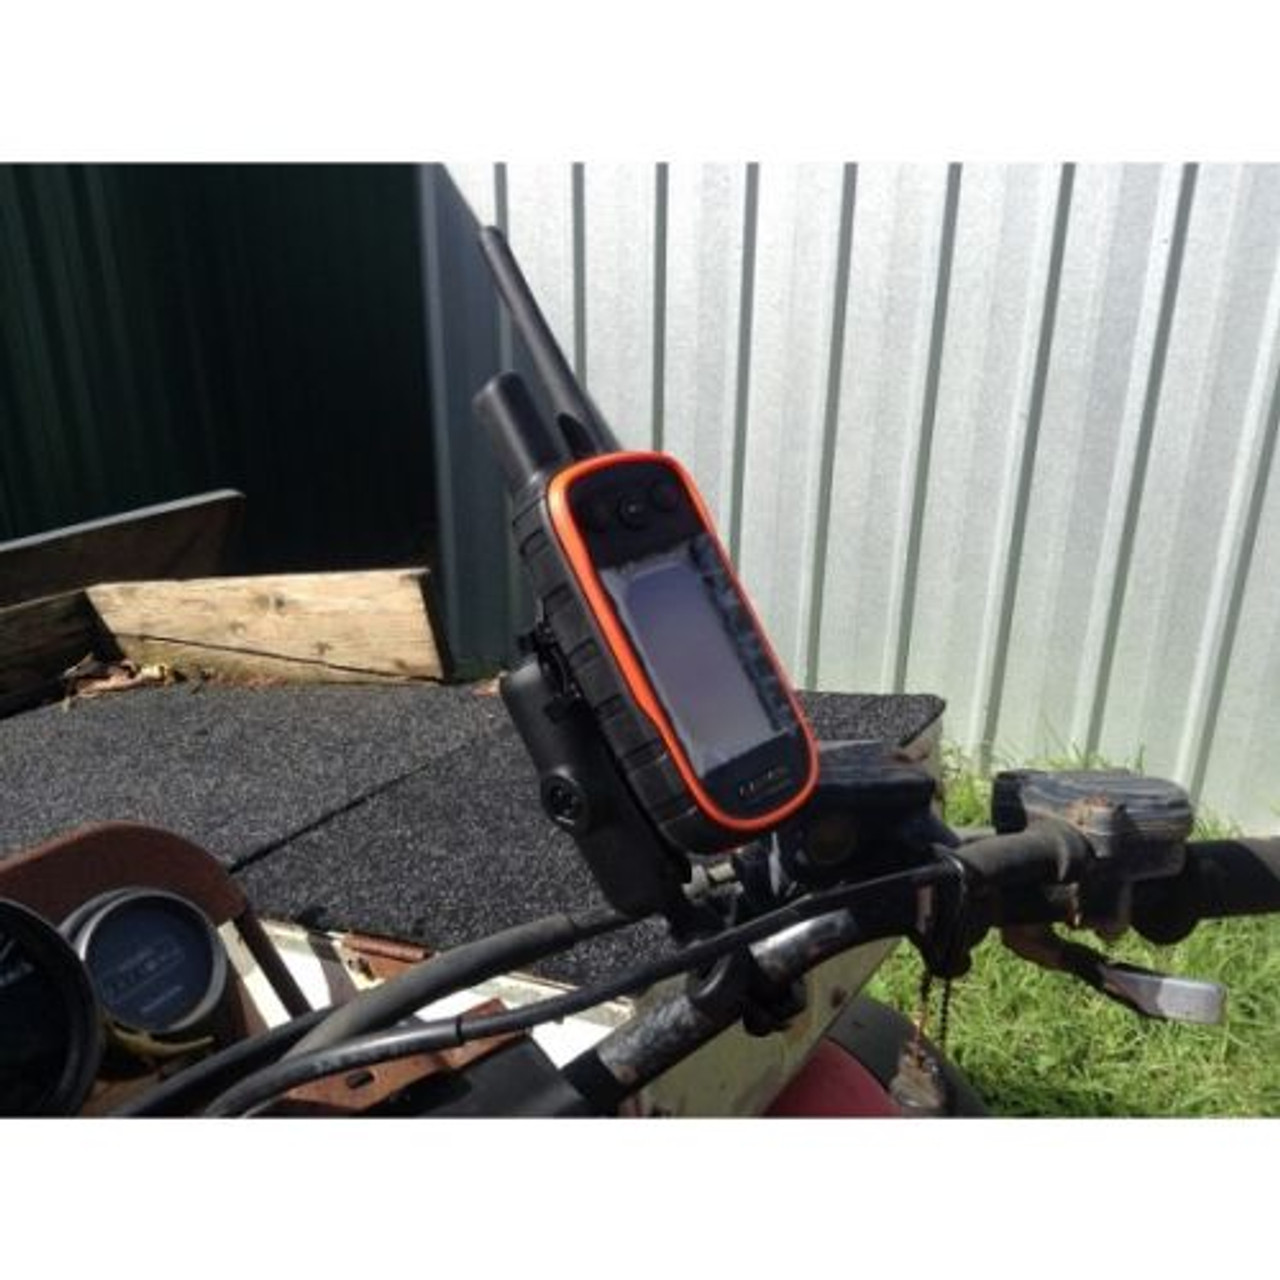 RAM Mount- Garmin 200, 300, Astro 430 Quad Bike Mount With Slide Connection. - Aussie Tracker Repairs